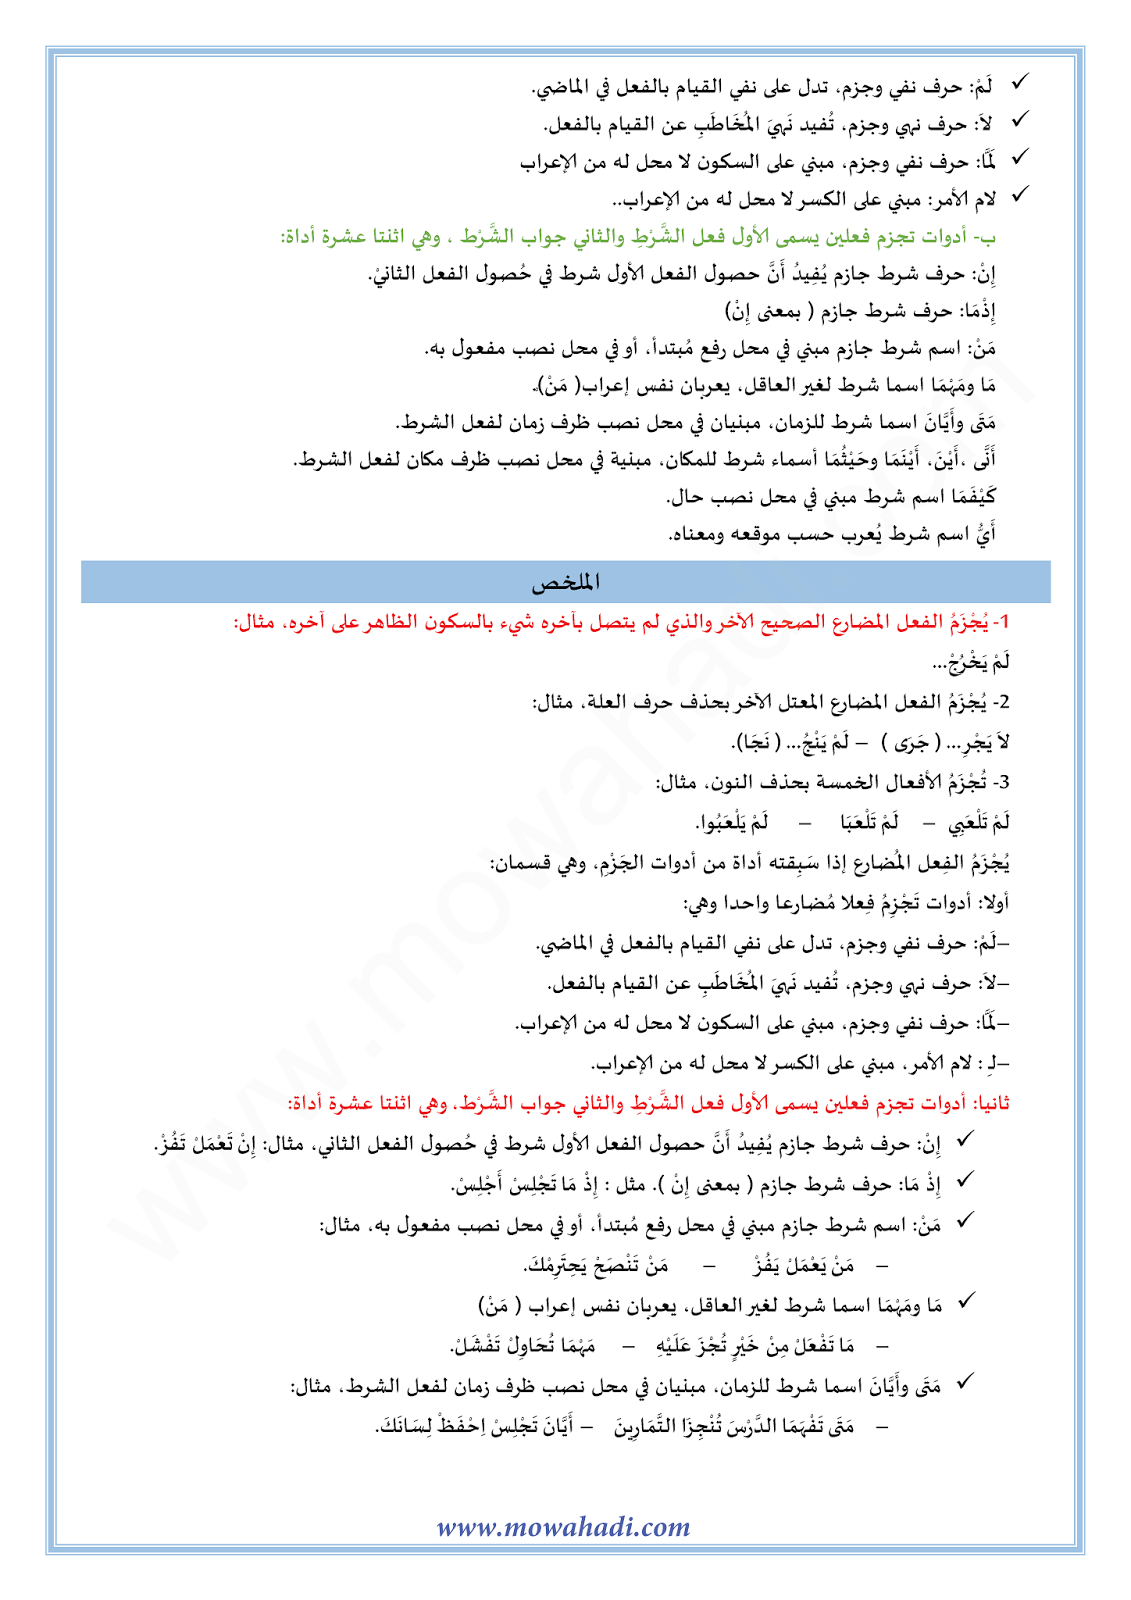 الدرس اللغوي اعراب الفعل المضارع : جزمه للسنة الأولى اعدادي في مادة اللغة العربية 11-cours-dars-loghawi1_002